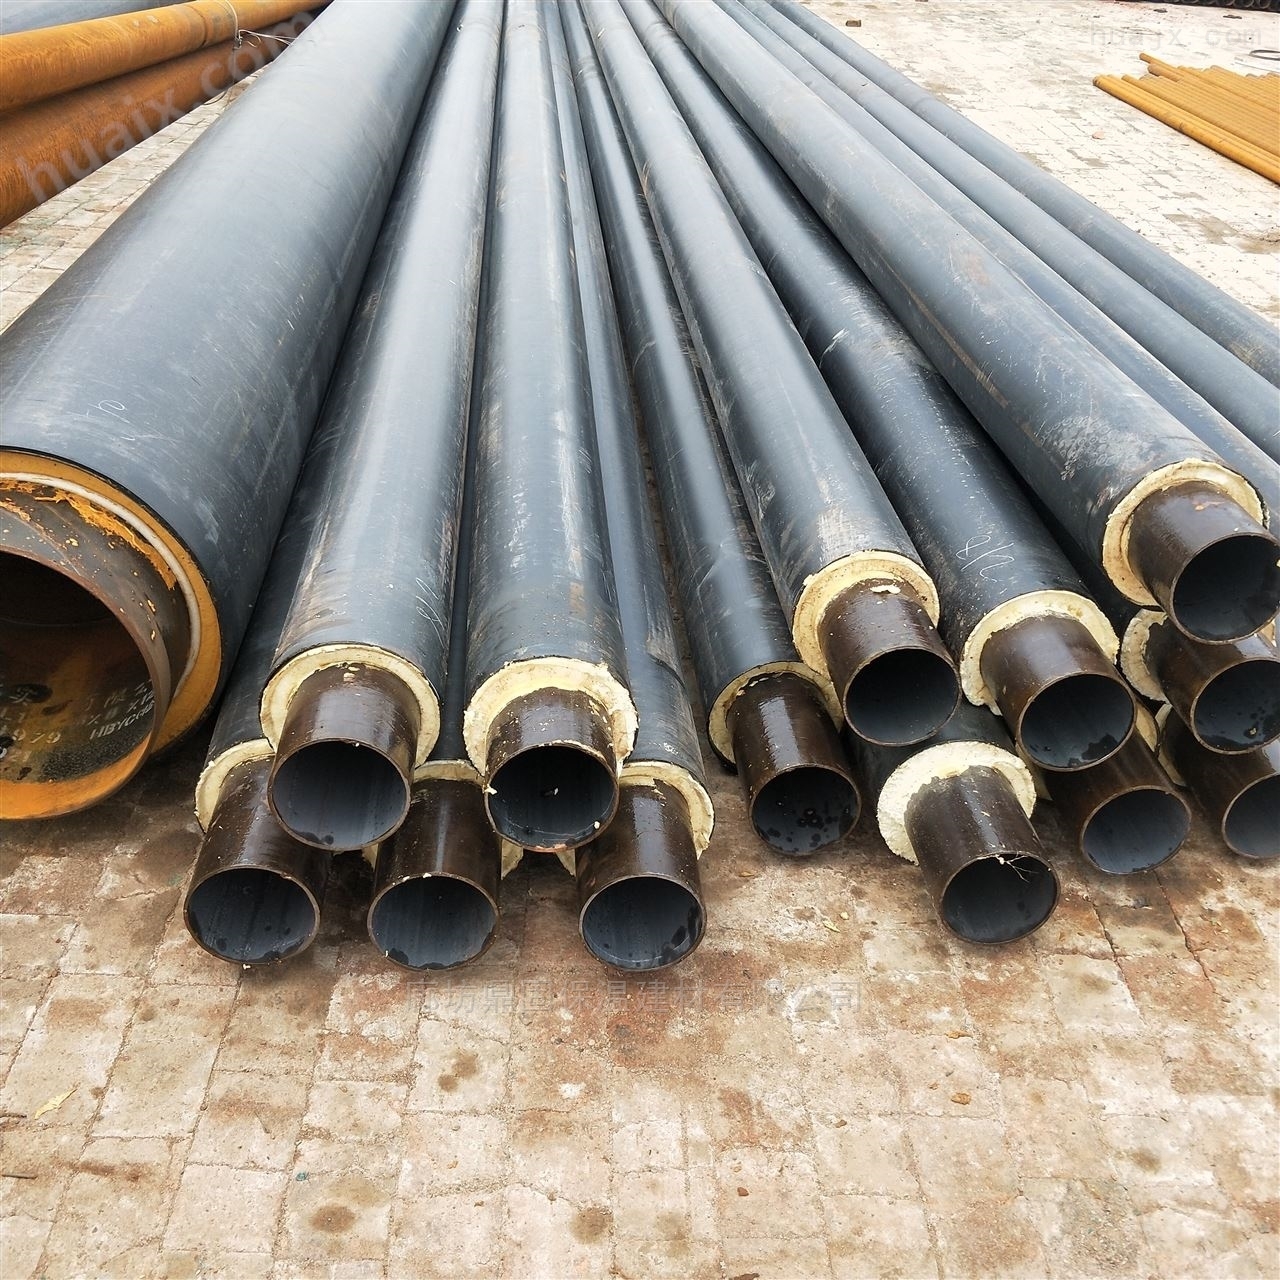 慈溪市钢套钢蒸汽式聚氨酯钢管开发与应用